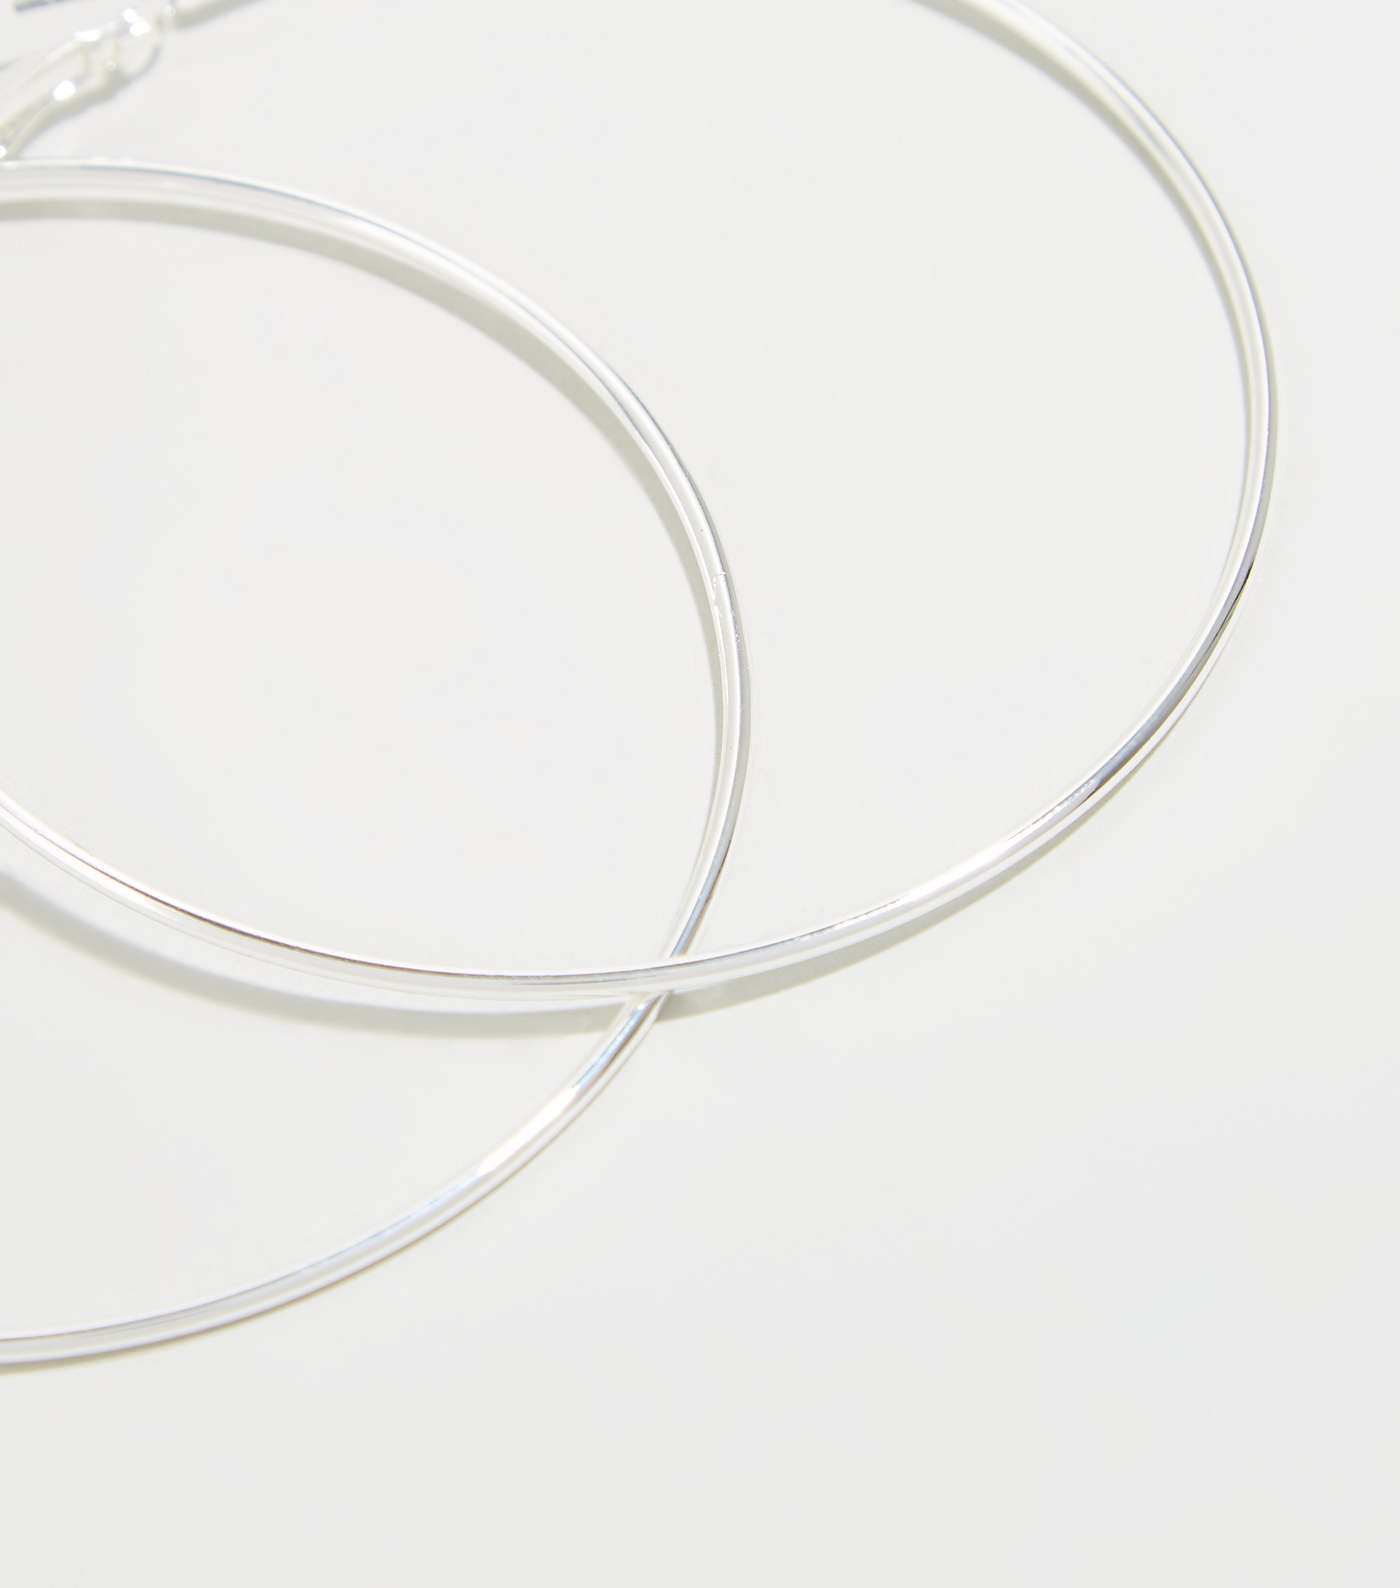 Affinity Silver Plated Hoop Earrings Image 3